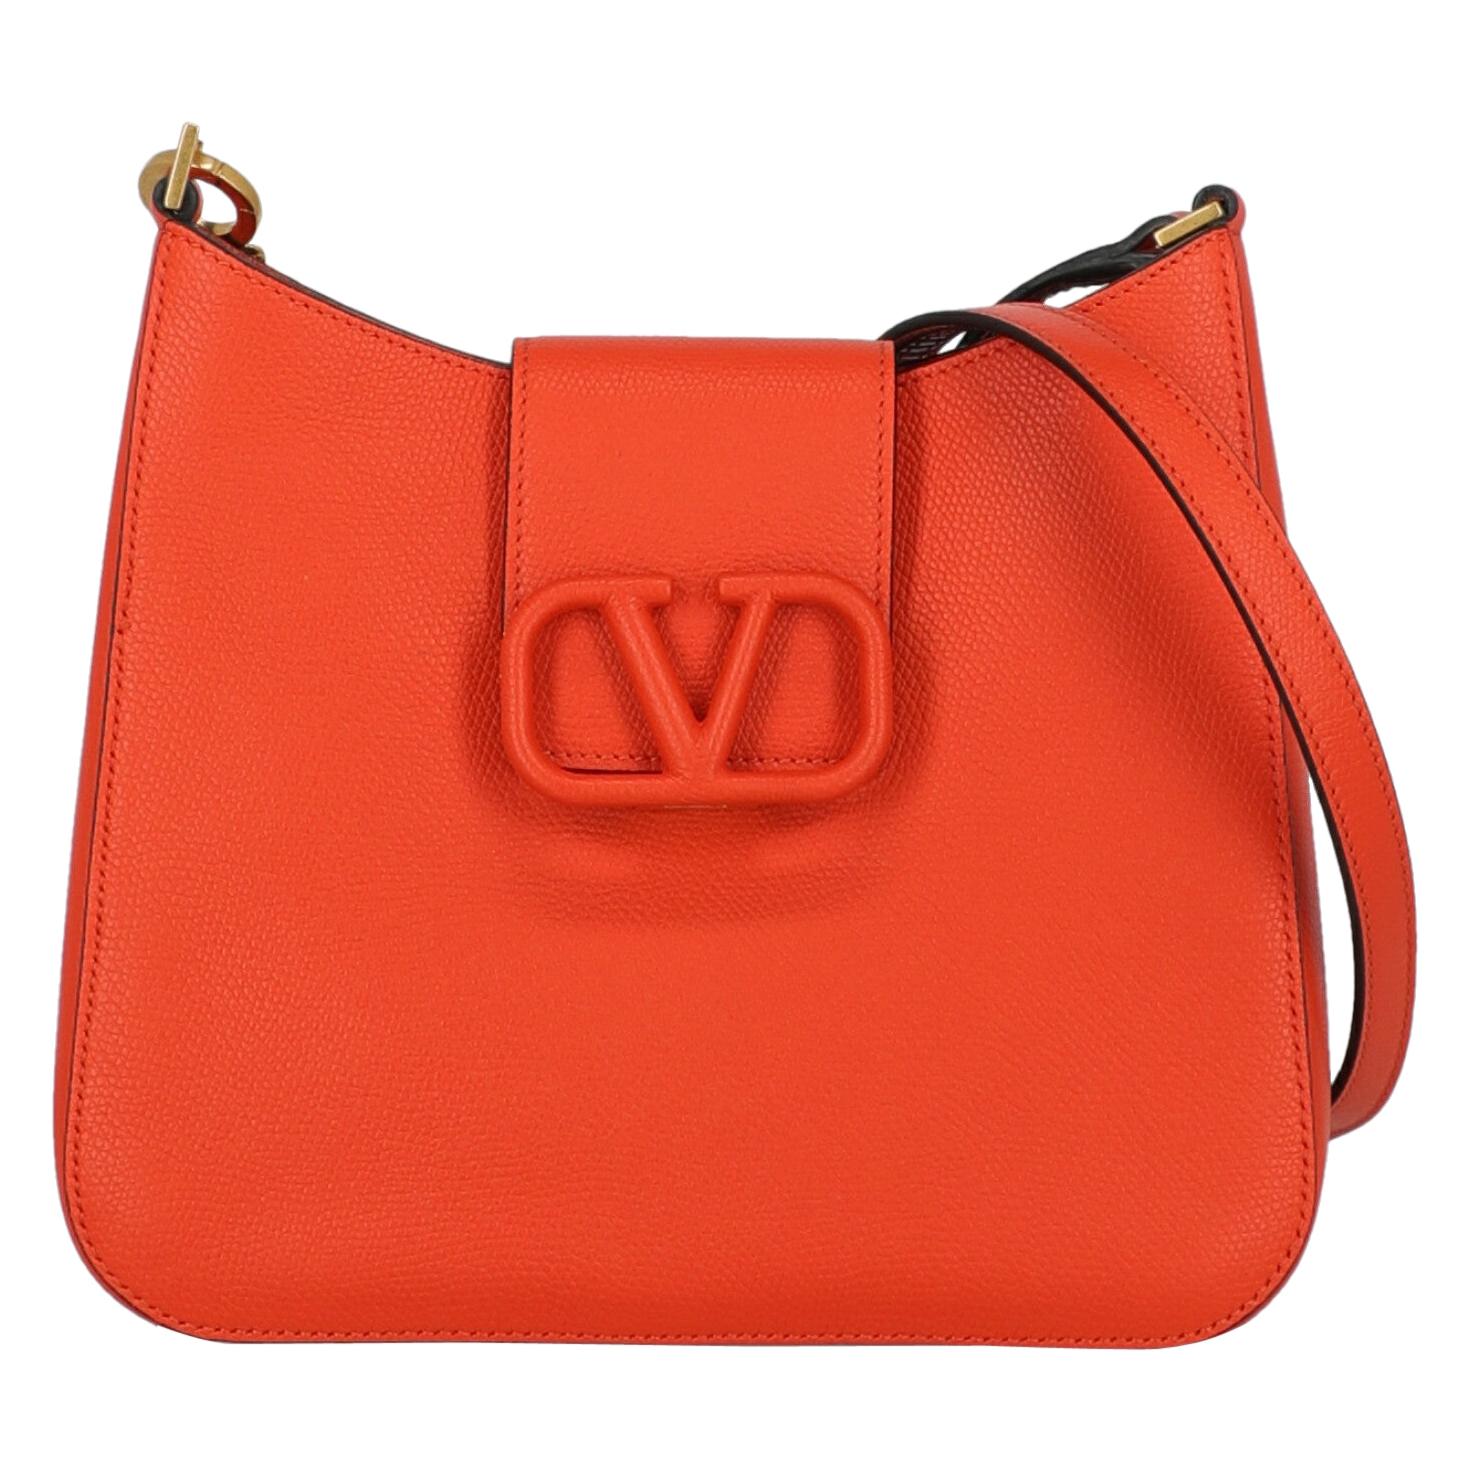 Valentino Woman Shoulder bag Orange Leather